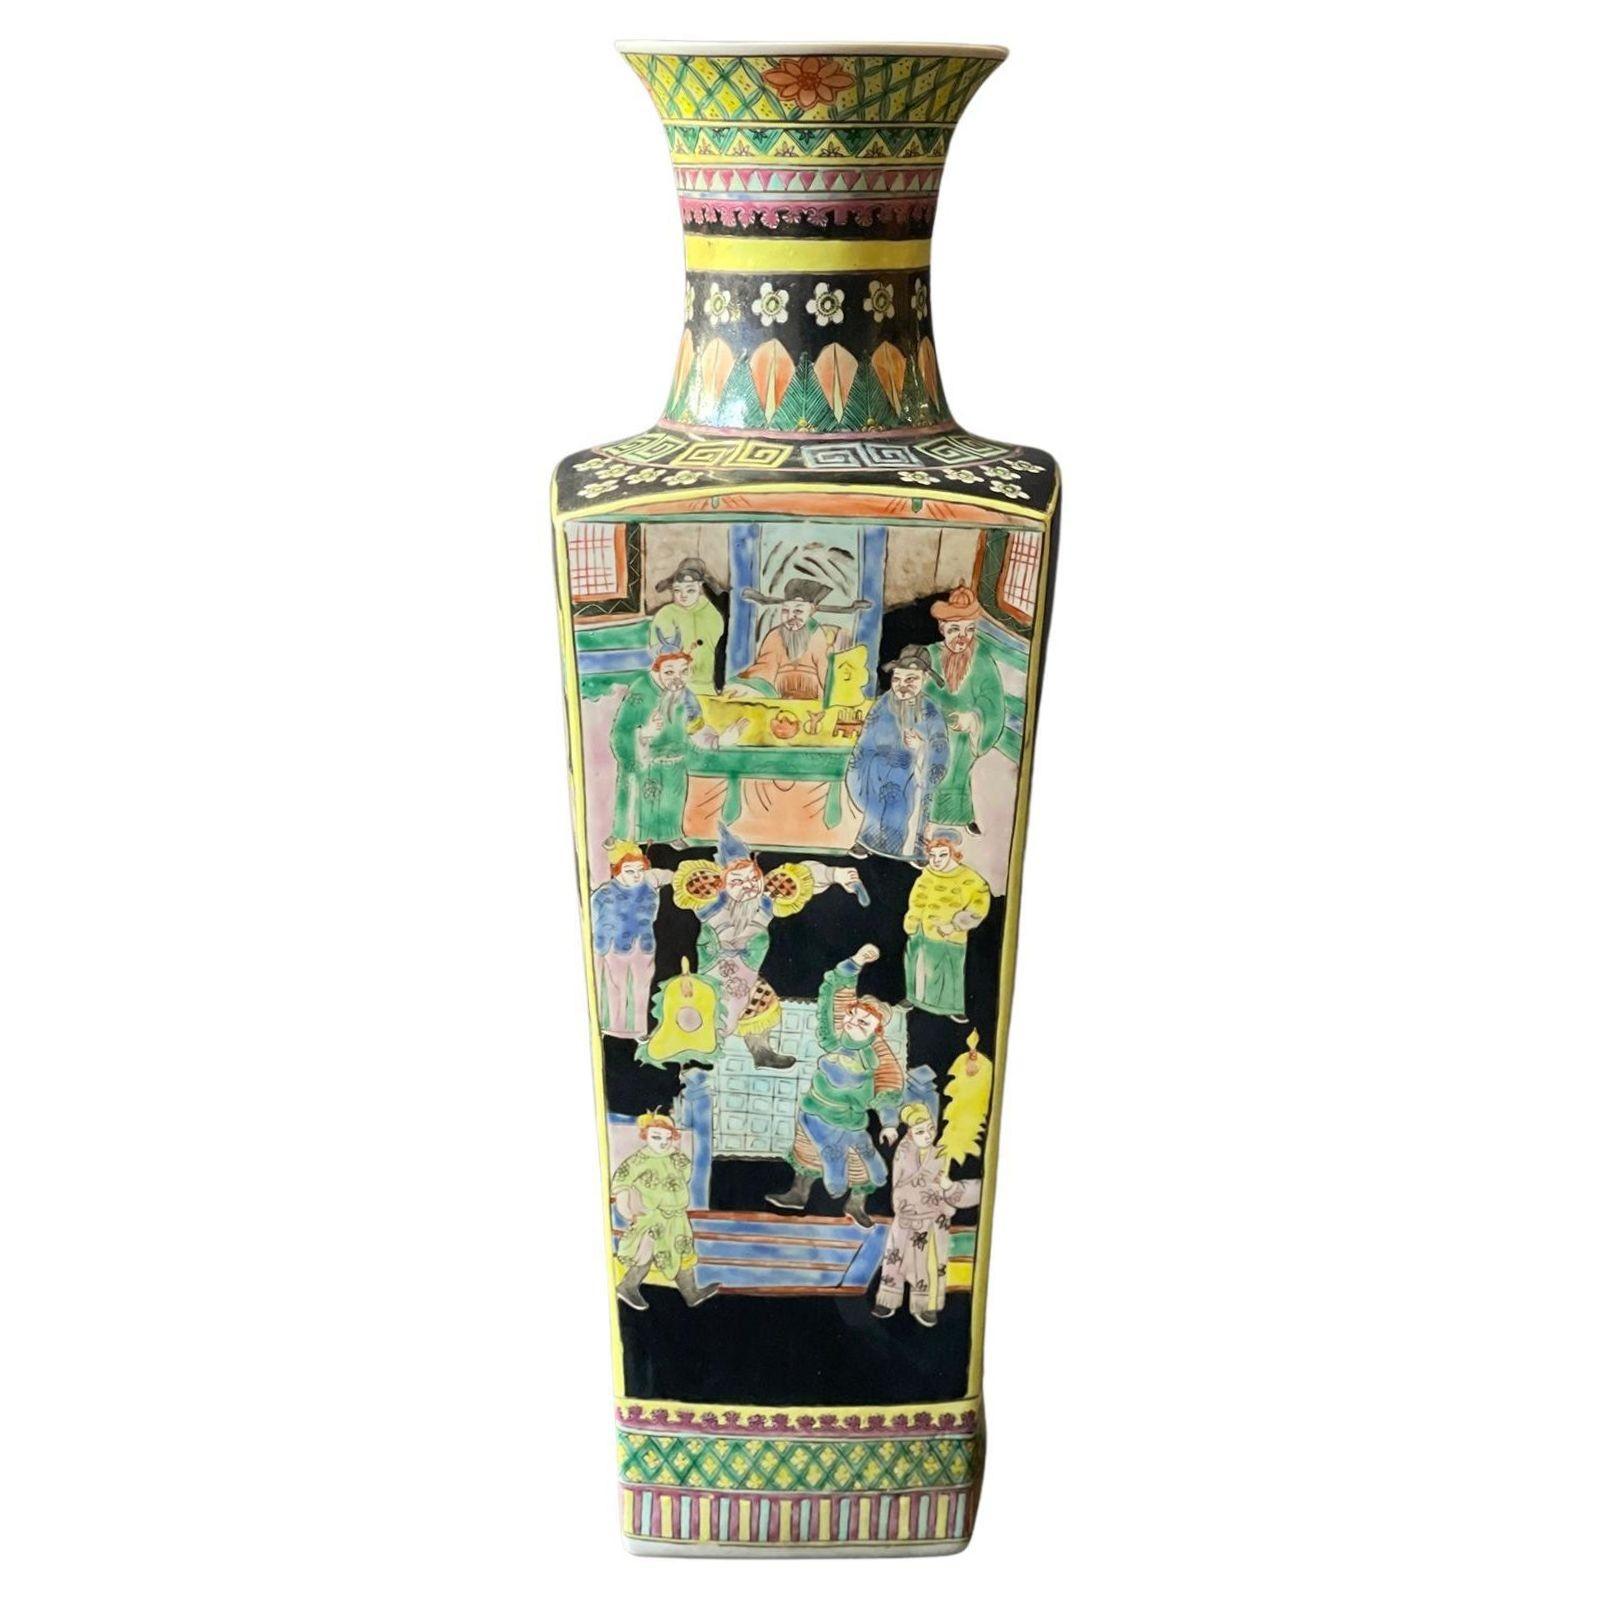 Paire de vases chinois en porcelaine de la Famille Noire de forme balustre carrée avec des scènes de bataille et des motifs floraux autour. Fabriqué au 20e siècle. 
Dimensions :
23 